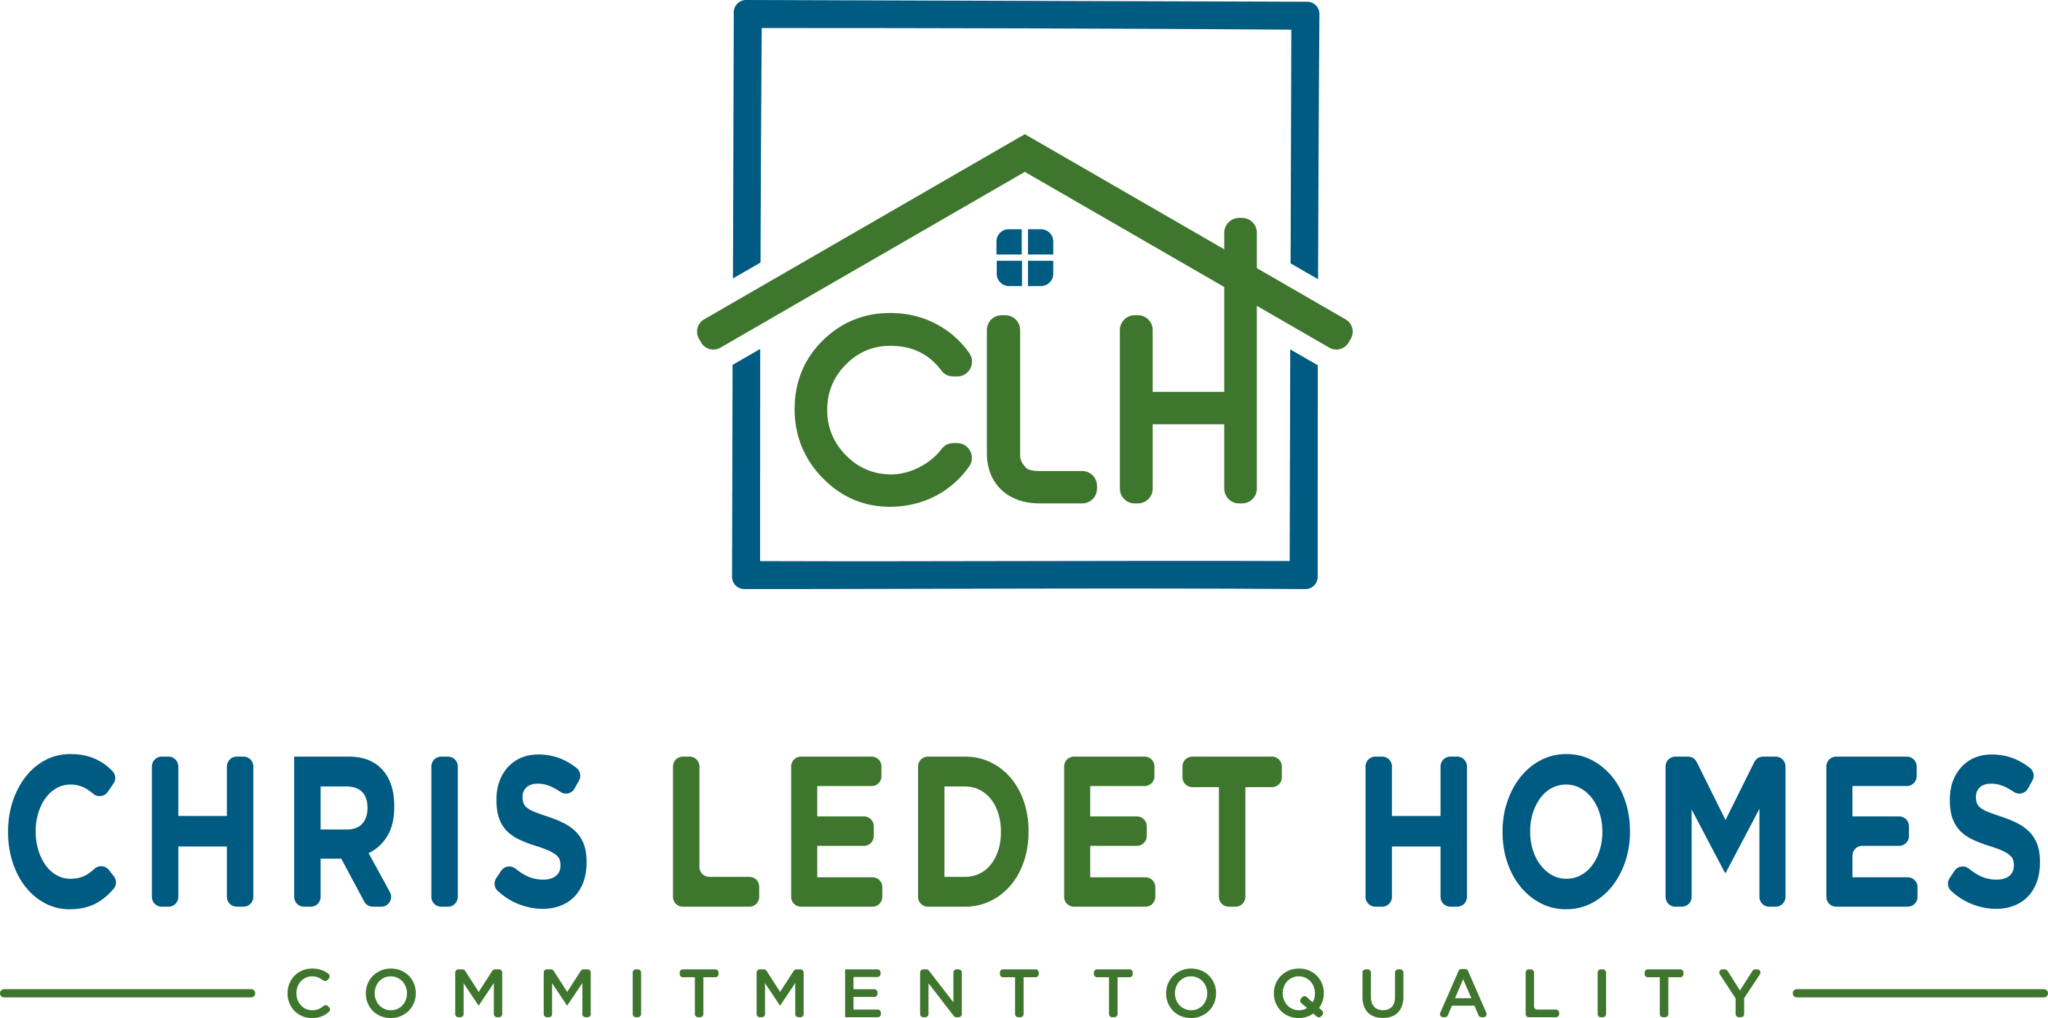 Chris Ledet Homes